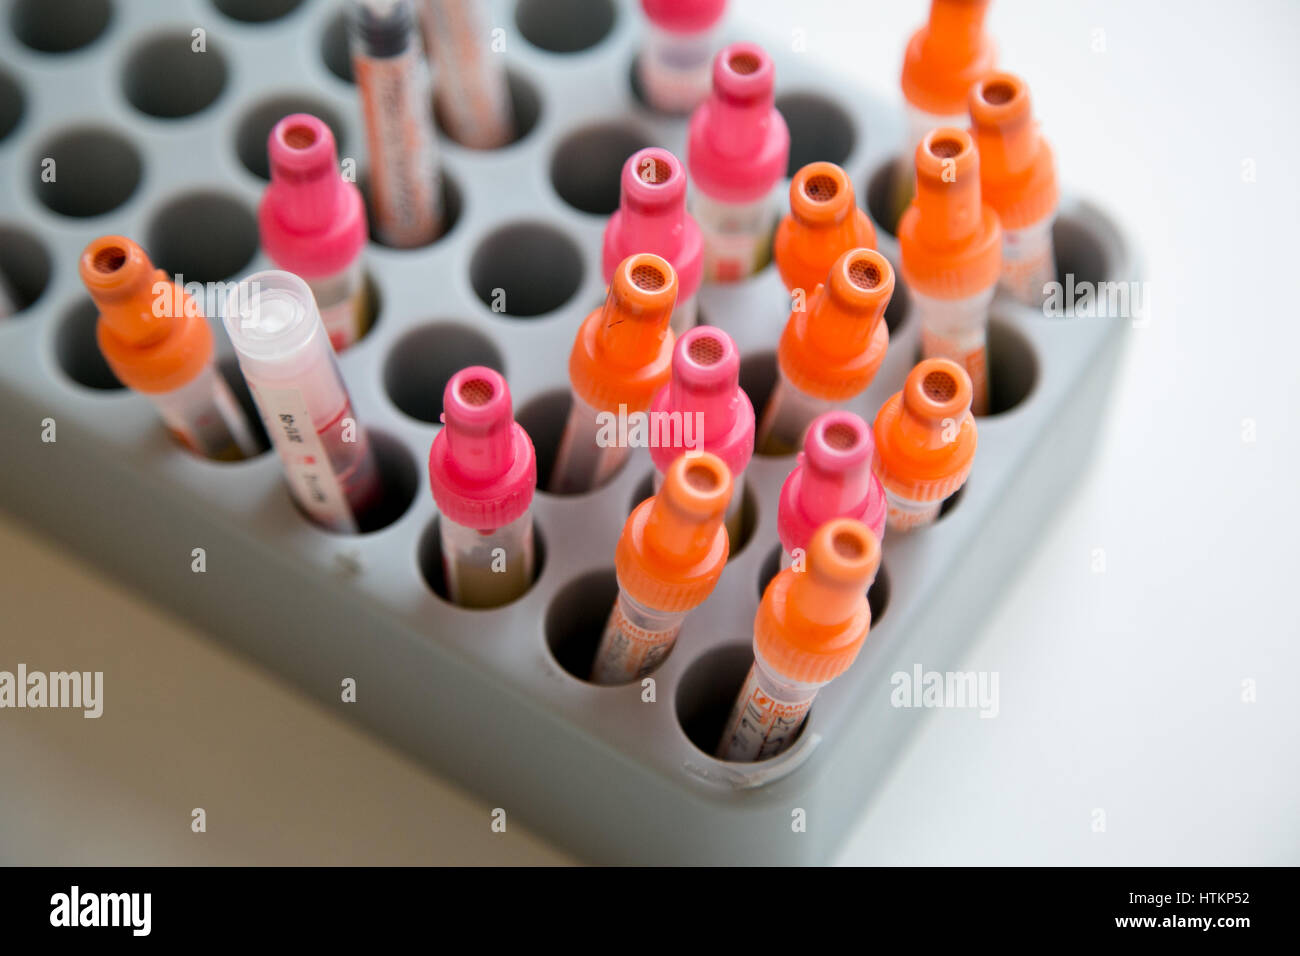 Blood samples awaiting testing Stock Photo